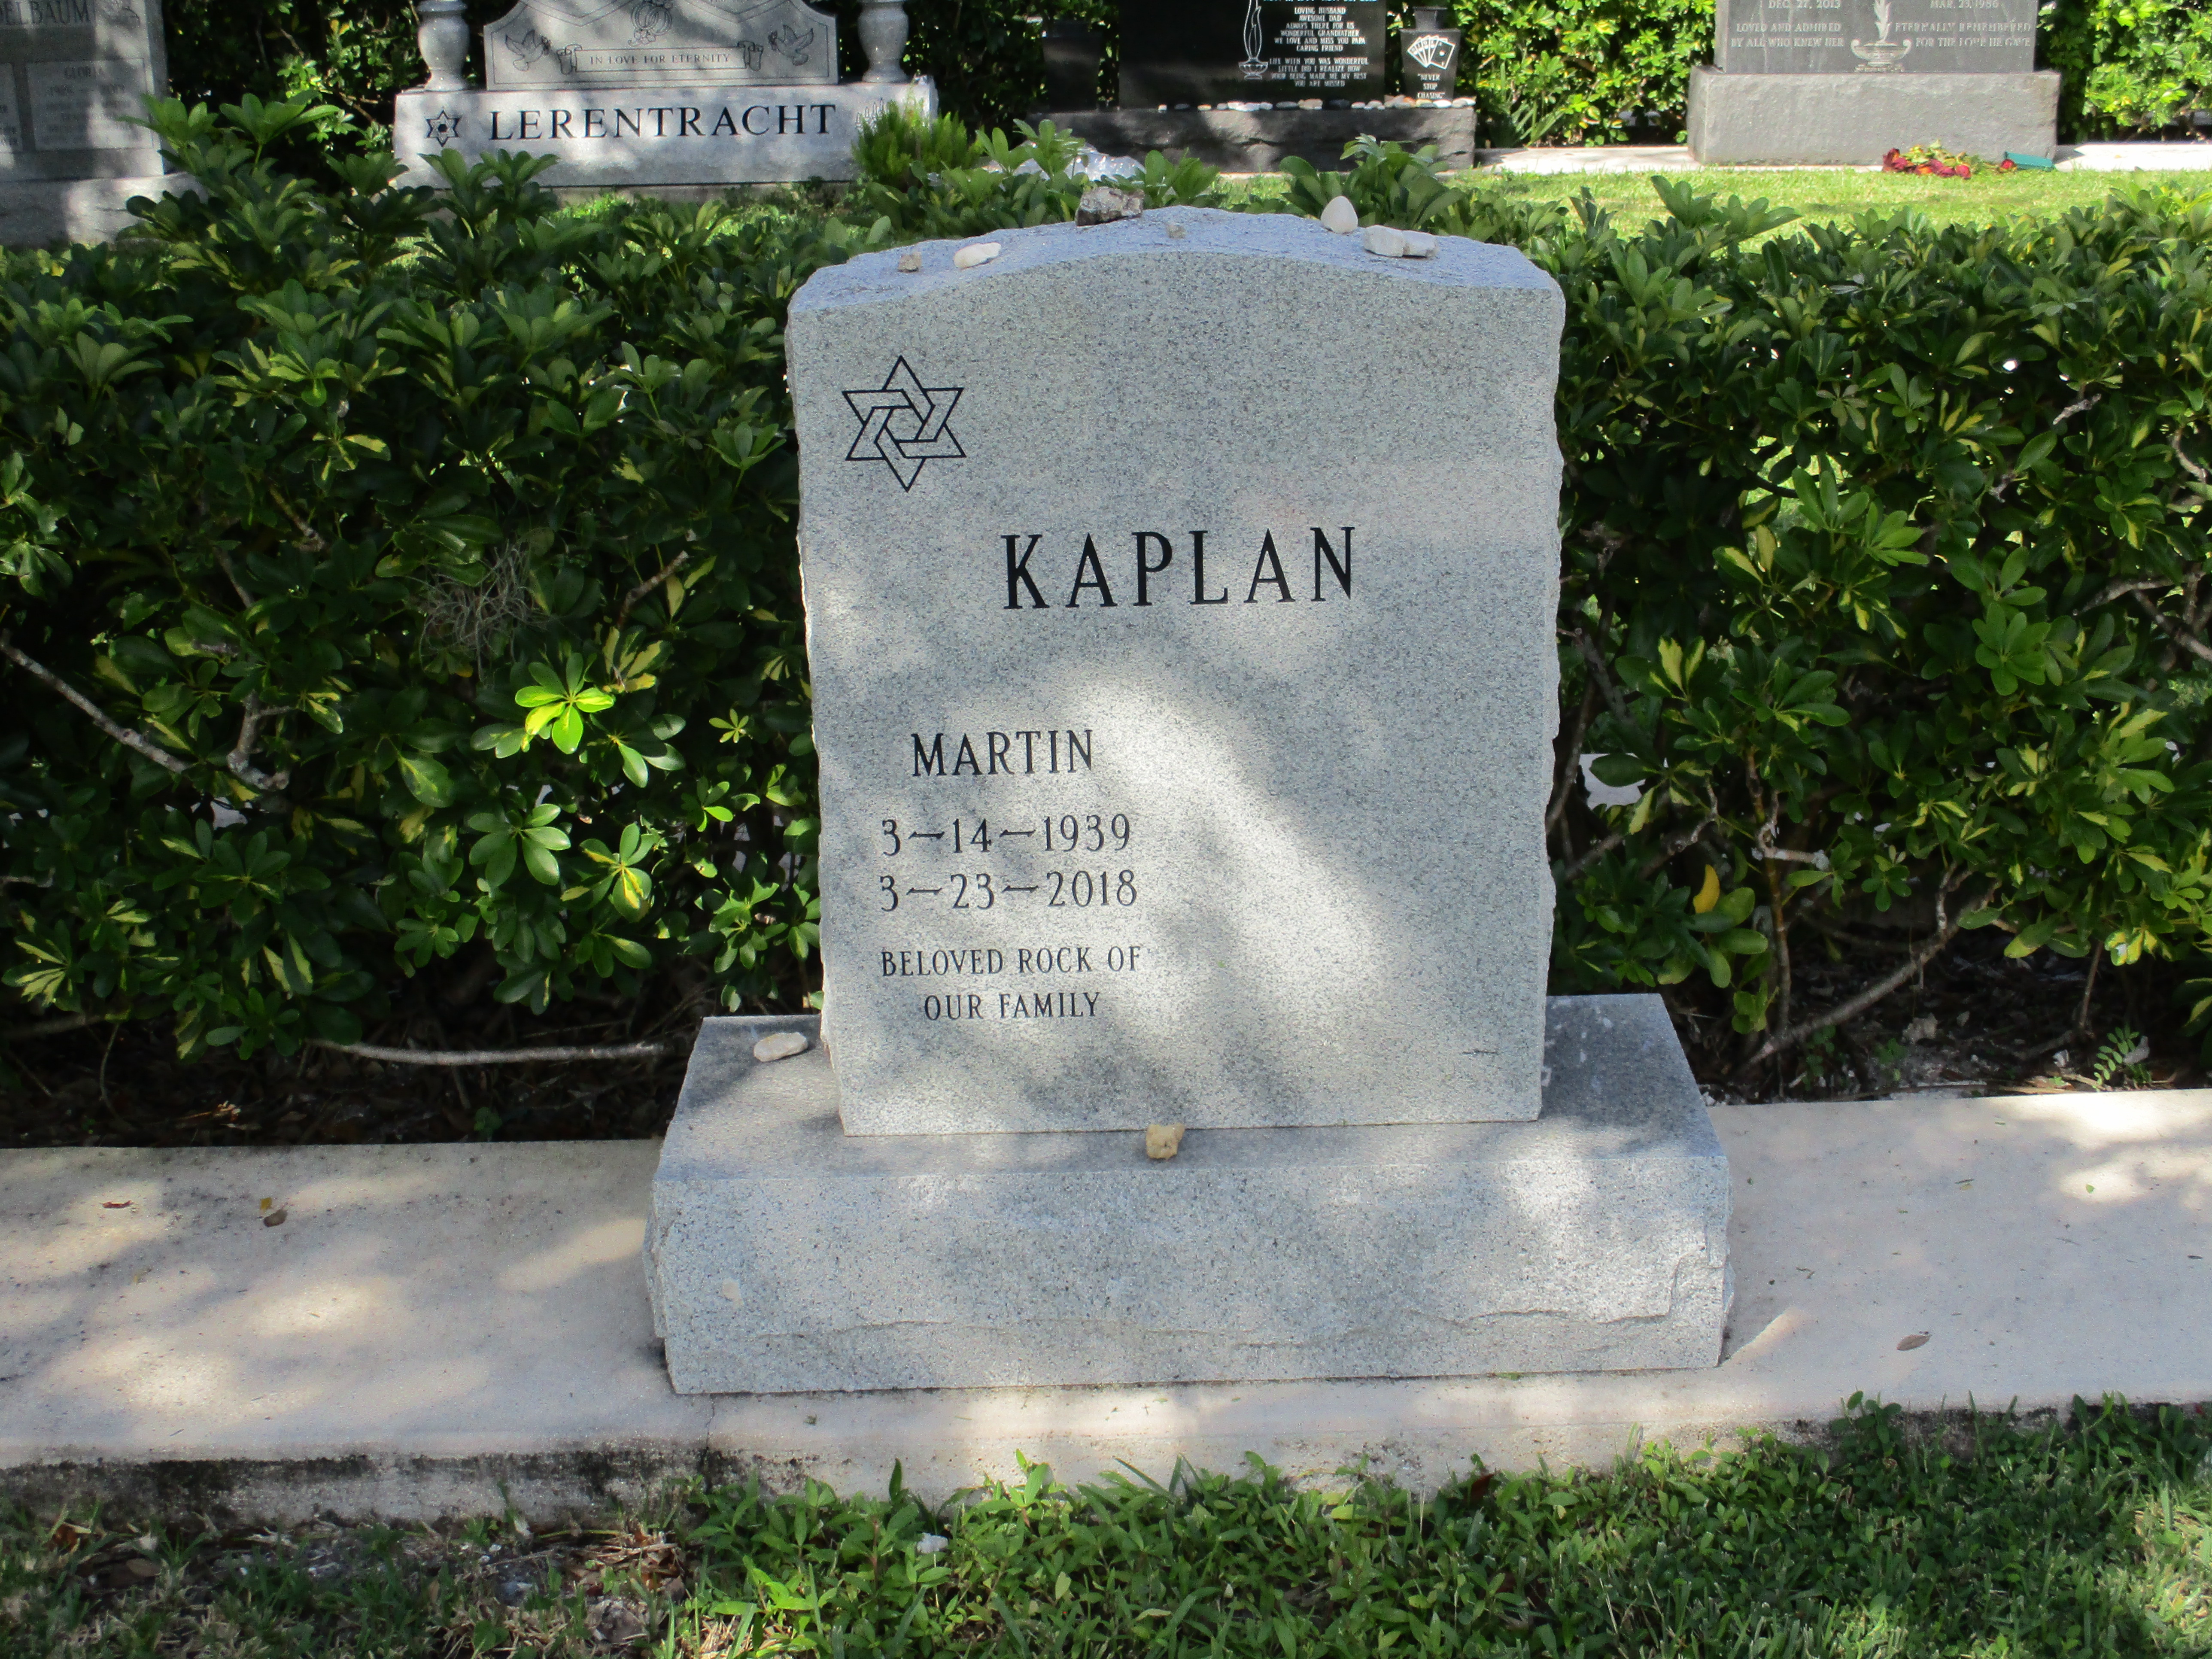 Martin Kaplan